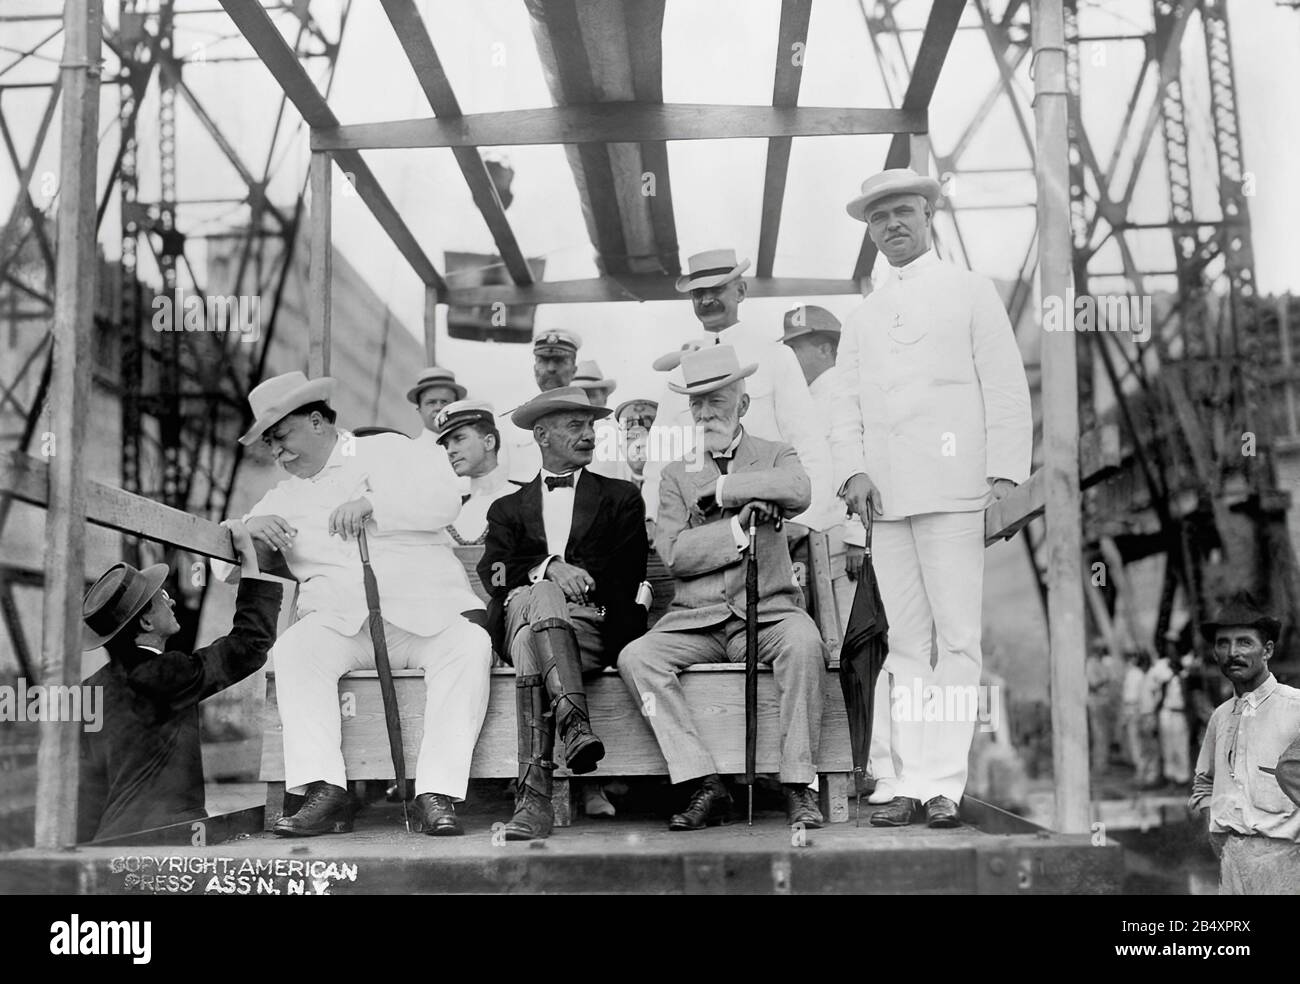 La costruzione del canale di Panama funziona all'inizio del 20th secolo il presidente degli Stati Uniti William Howard Taft (a sinistra) con Supt. Sidney Williamson (centro) durante l'ispezione di costruzione del canale di Panama, Fotografia da Harris & Ewing, novembre 1910 Foto Stock